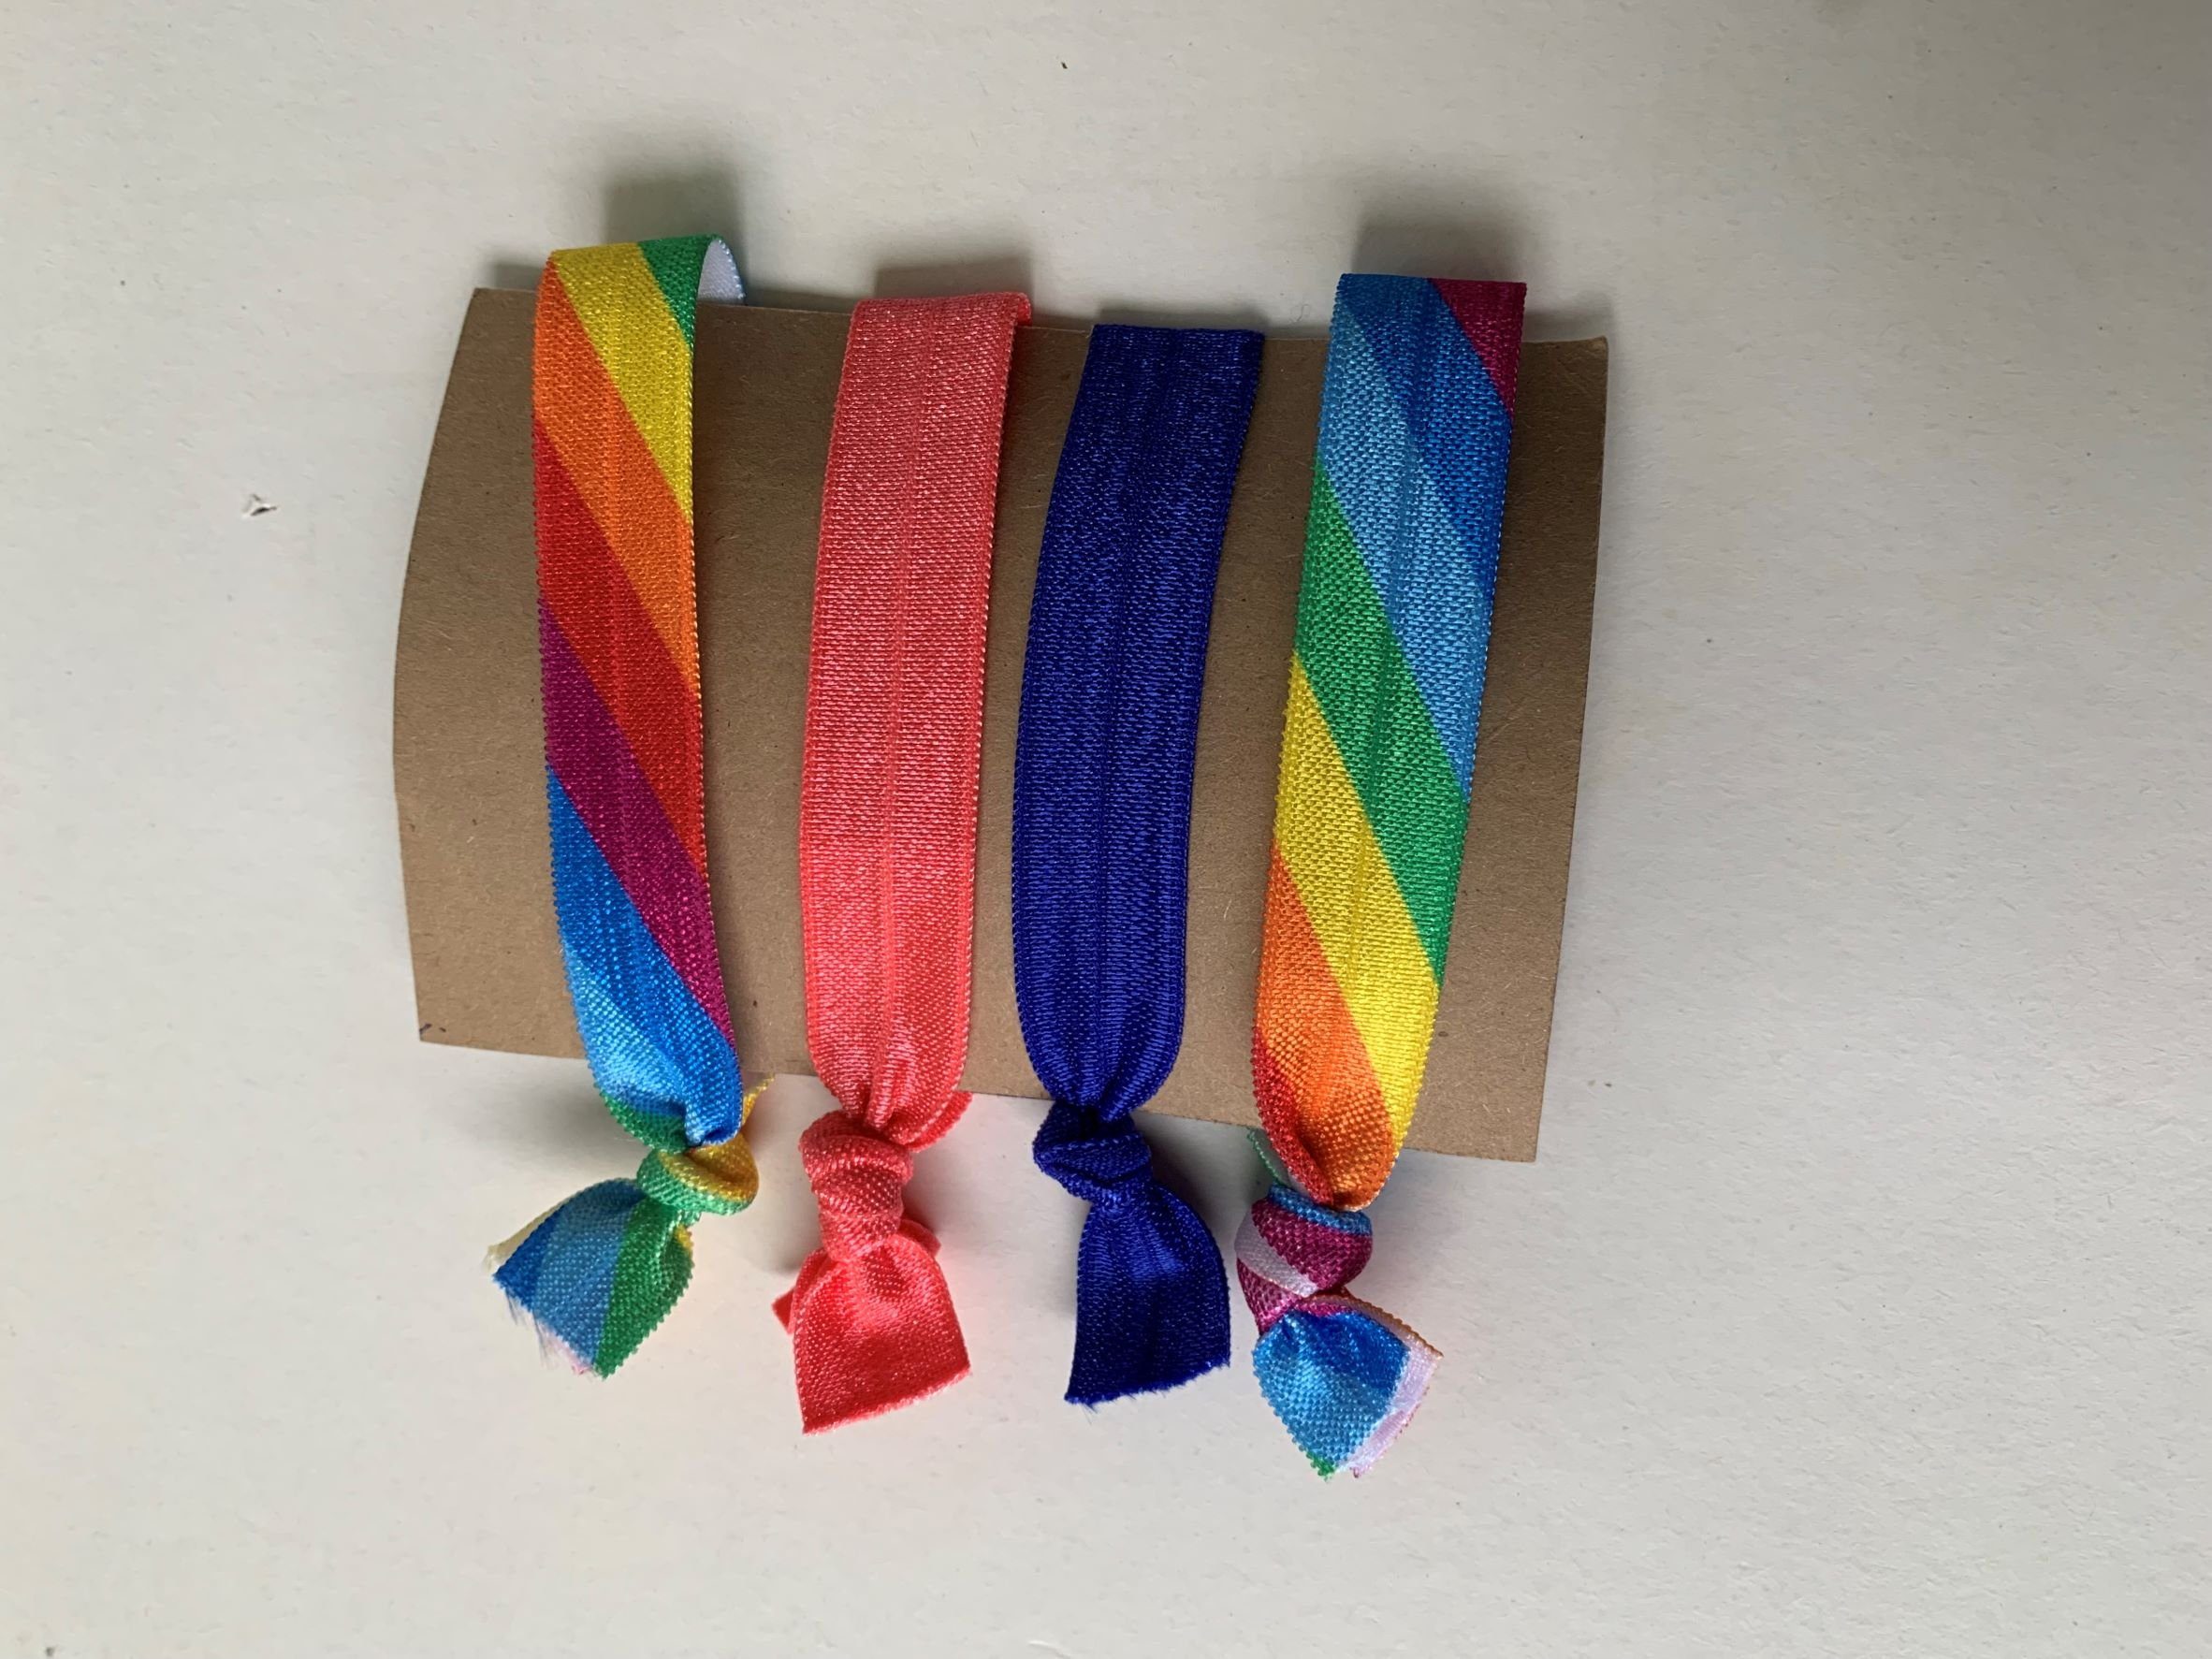 LK Trend & Style Zopfband elastisches Haarband oder Armband, für die Festival Frisur, cooles Armband, Haarband das sich als Armband einsetzen lässt, ein Trend Regenbogen